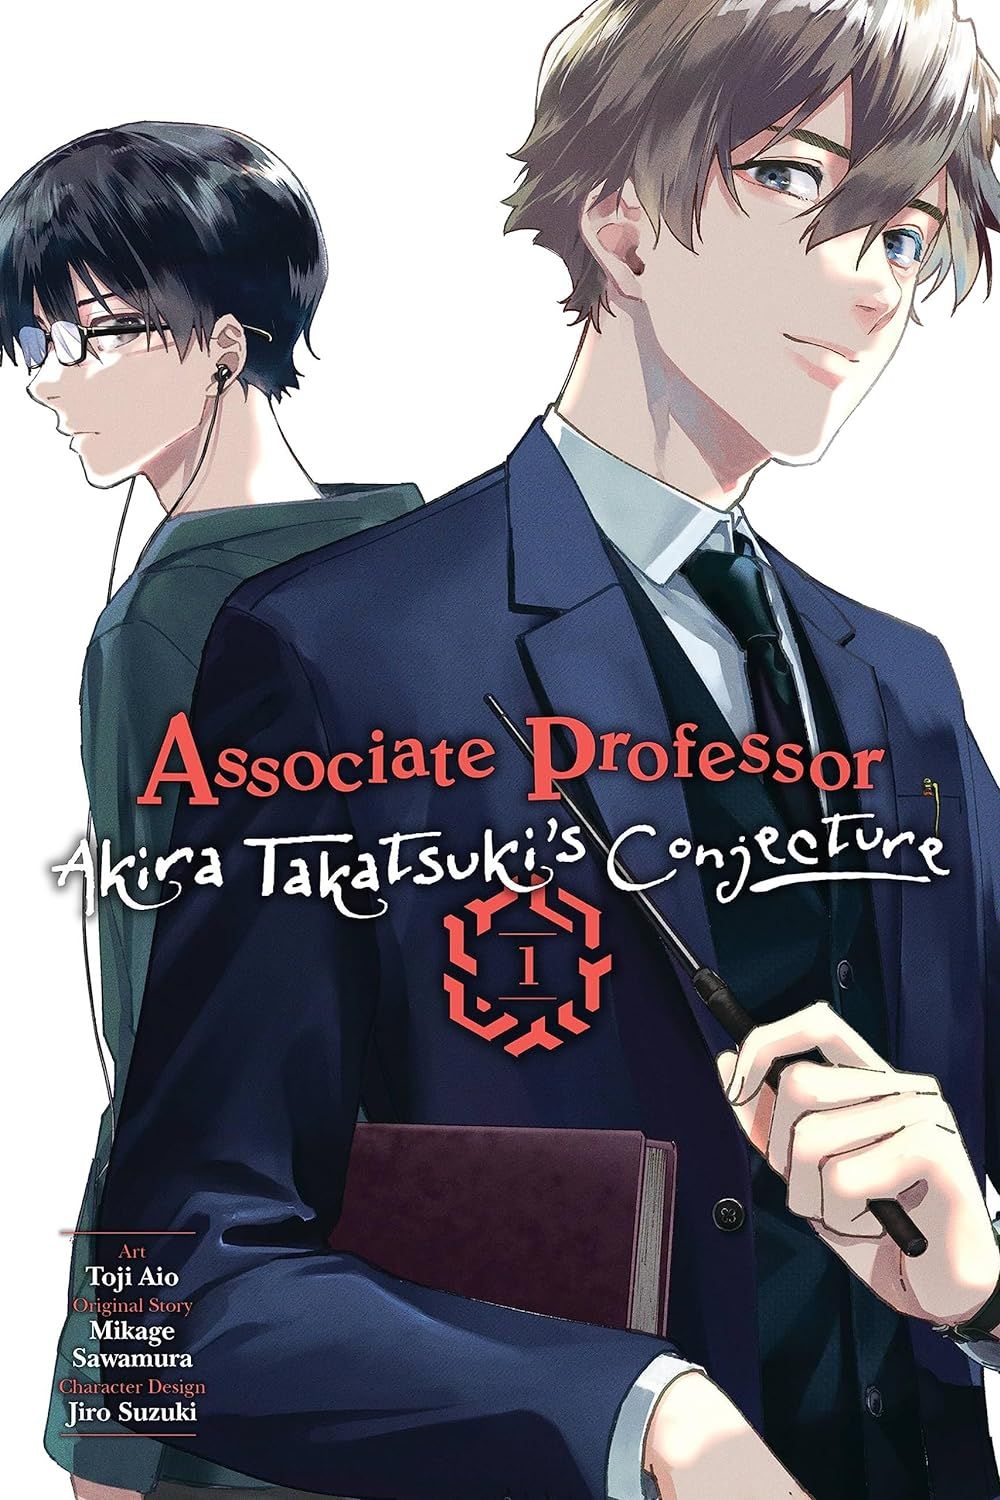 the cover of Associate Professor Akira Takatsuki's Conjecture, Vol. 1